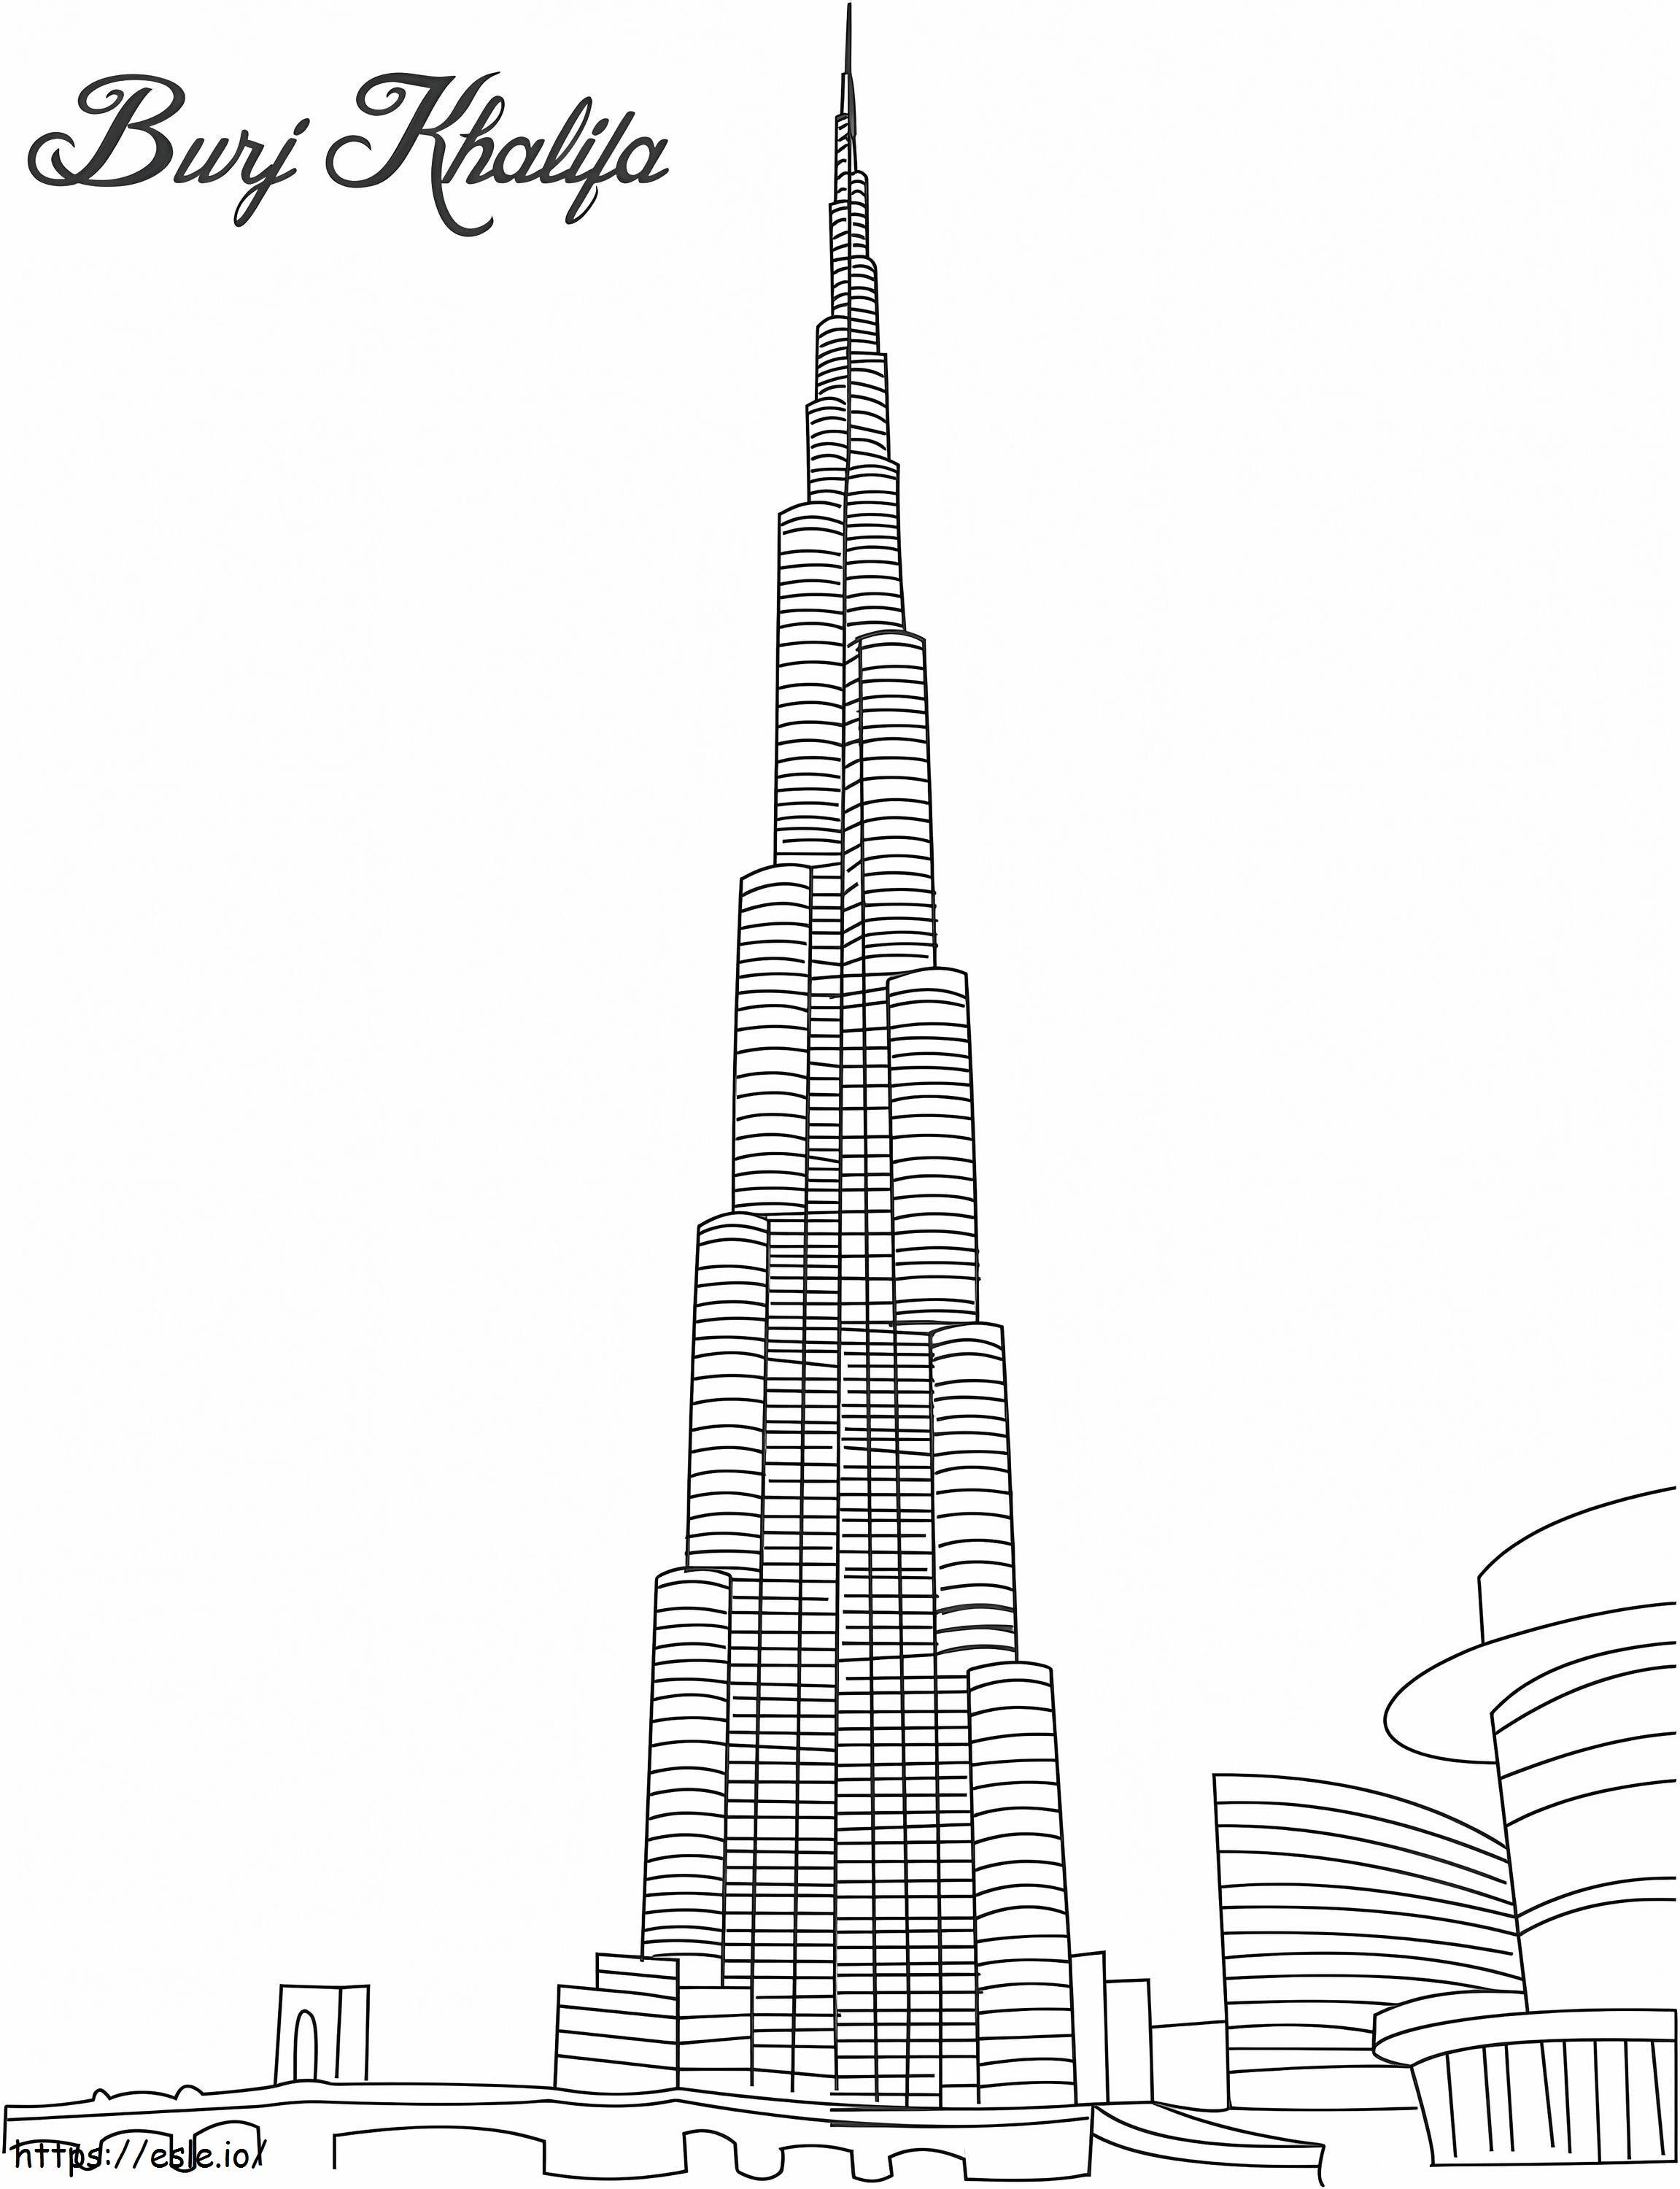 1526980175 3350 29310 Burj Khalifa para colorir